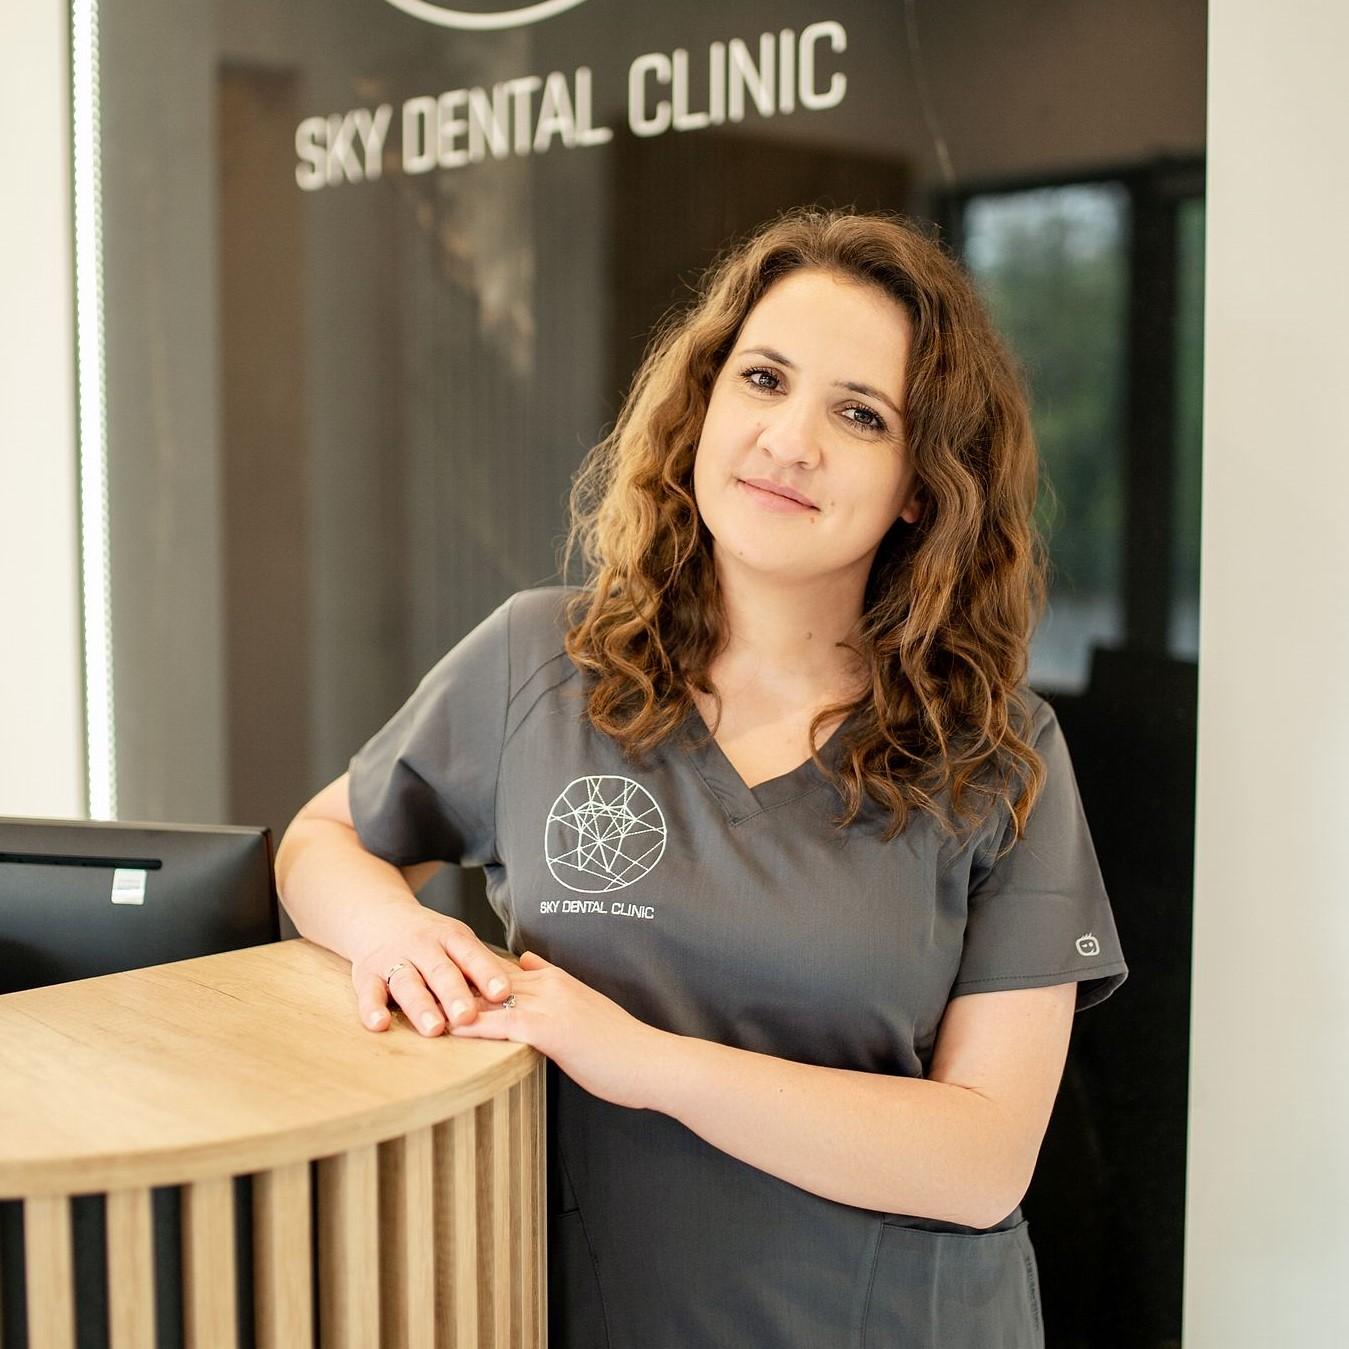  technik dentystyczny Dorota Szumińska - pracownik Sky Dentel Clinic